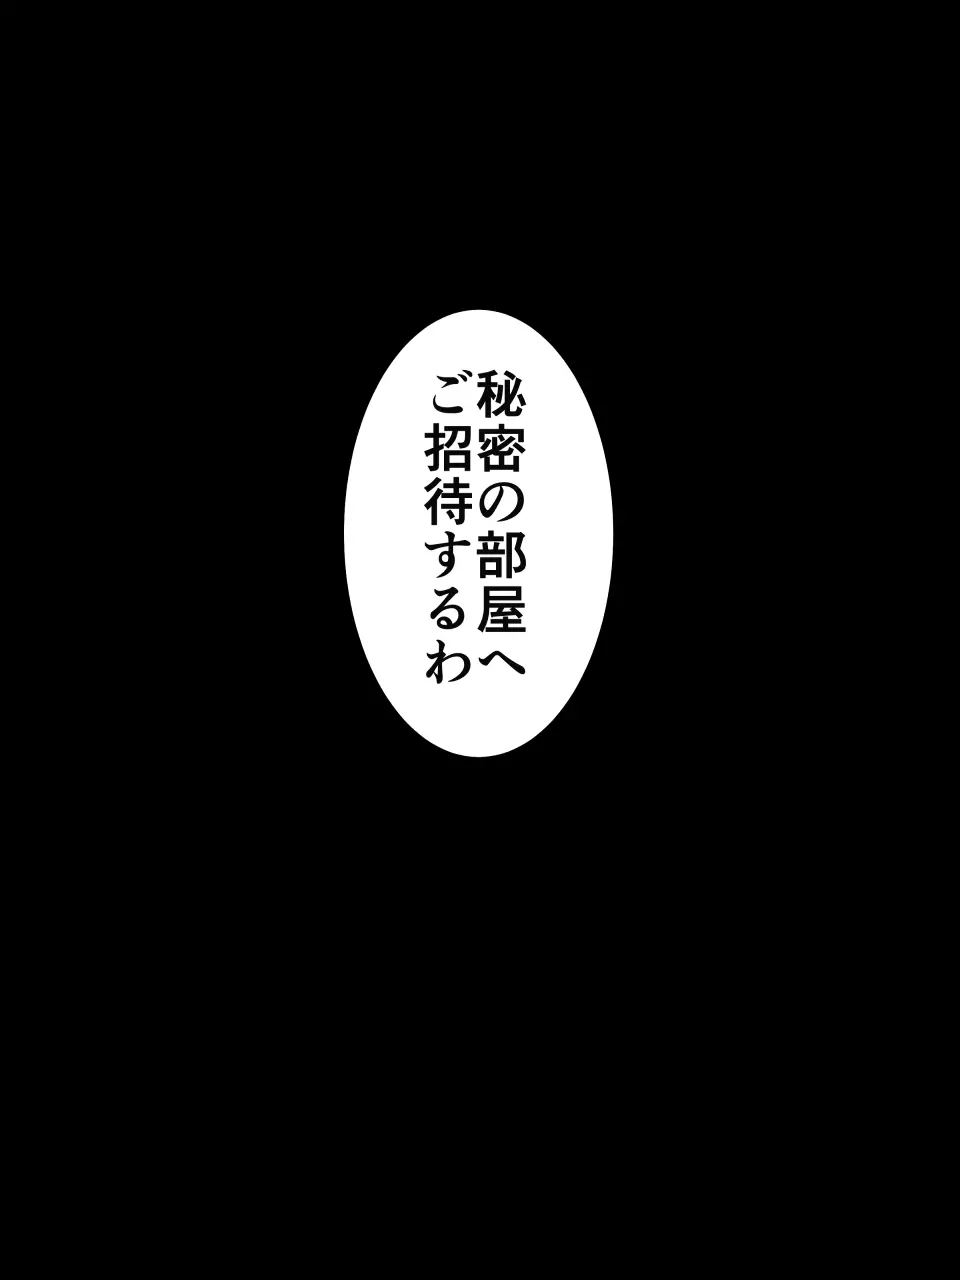 怪盗シルバーキャット漫画版 第1話【闇夜に舞う銀猫】 26ページ